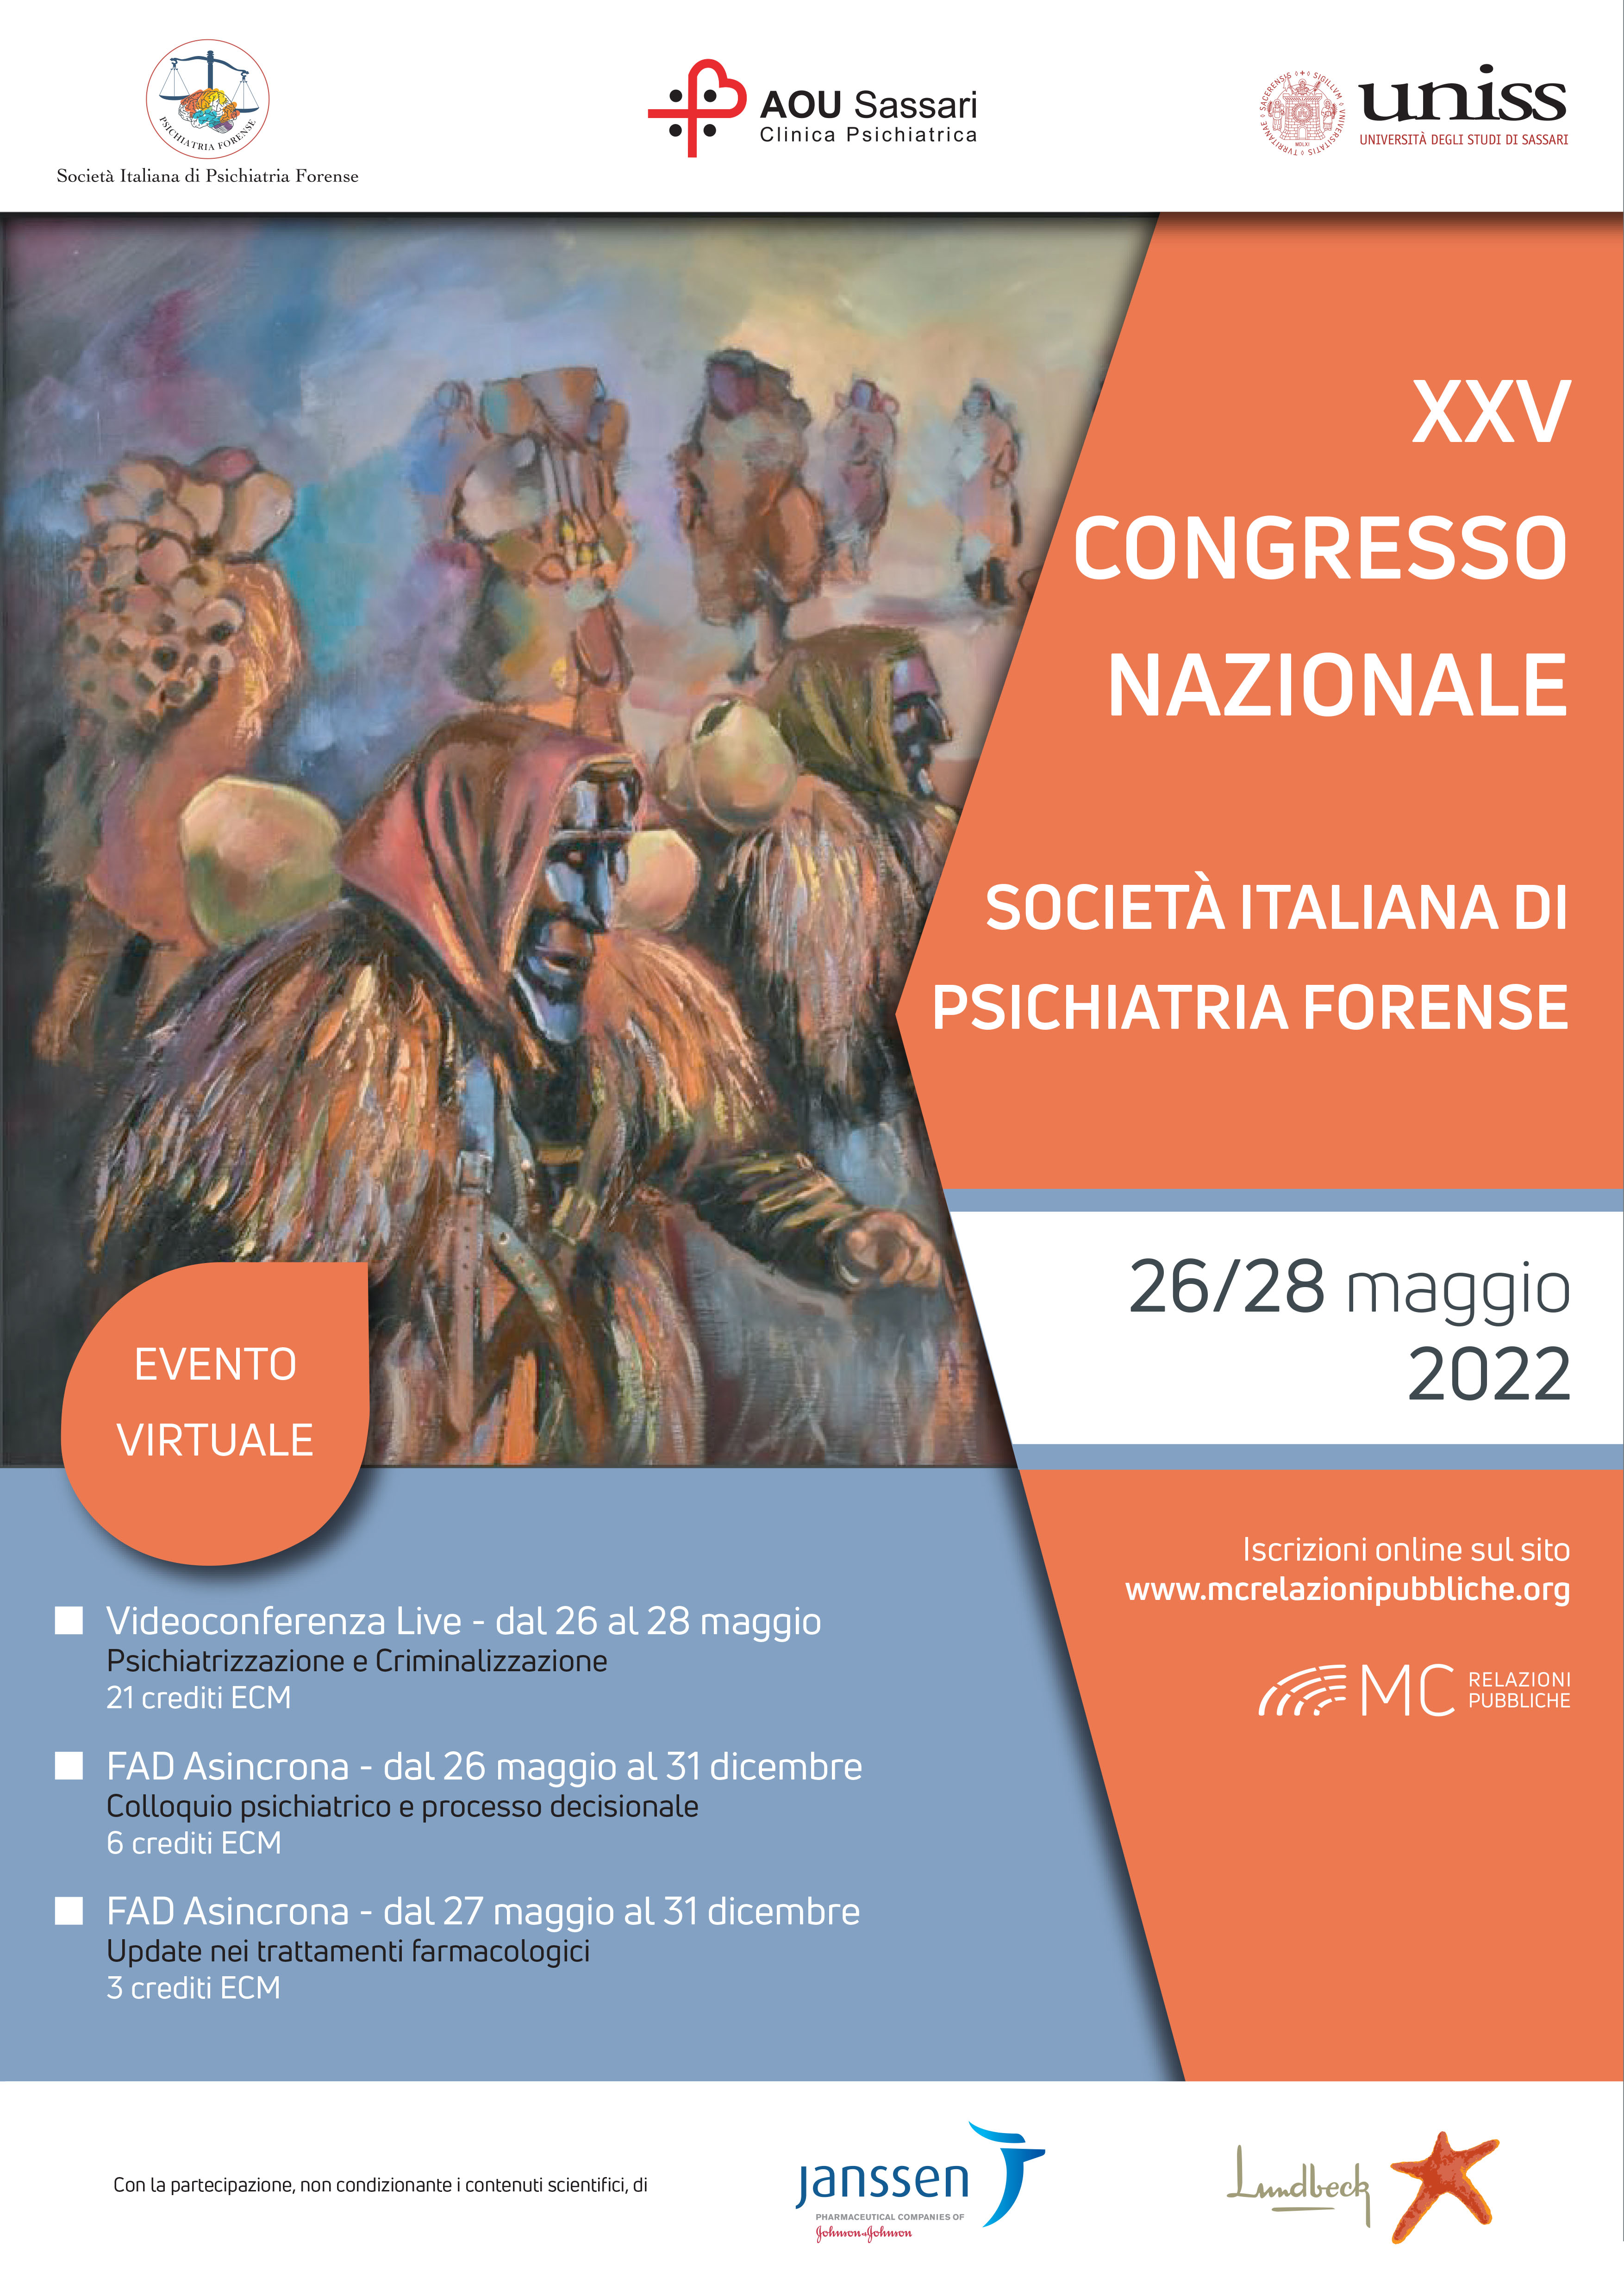 XXV CONGRESSO NAZIONALE SOCIETÀ ITALIANA DI PSICHIATRIA FORENSE